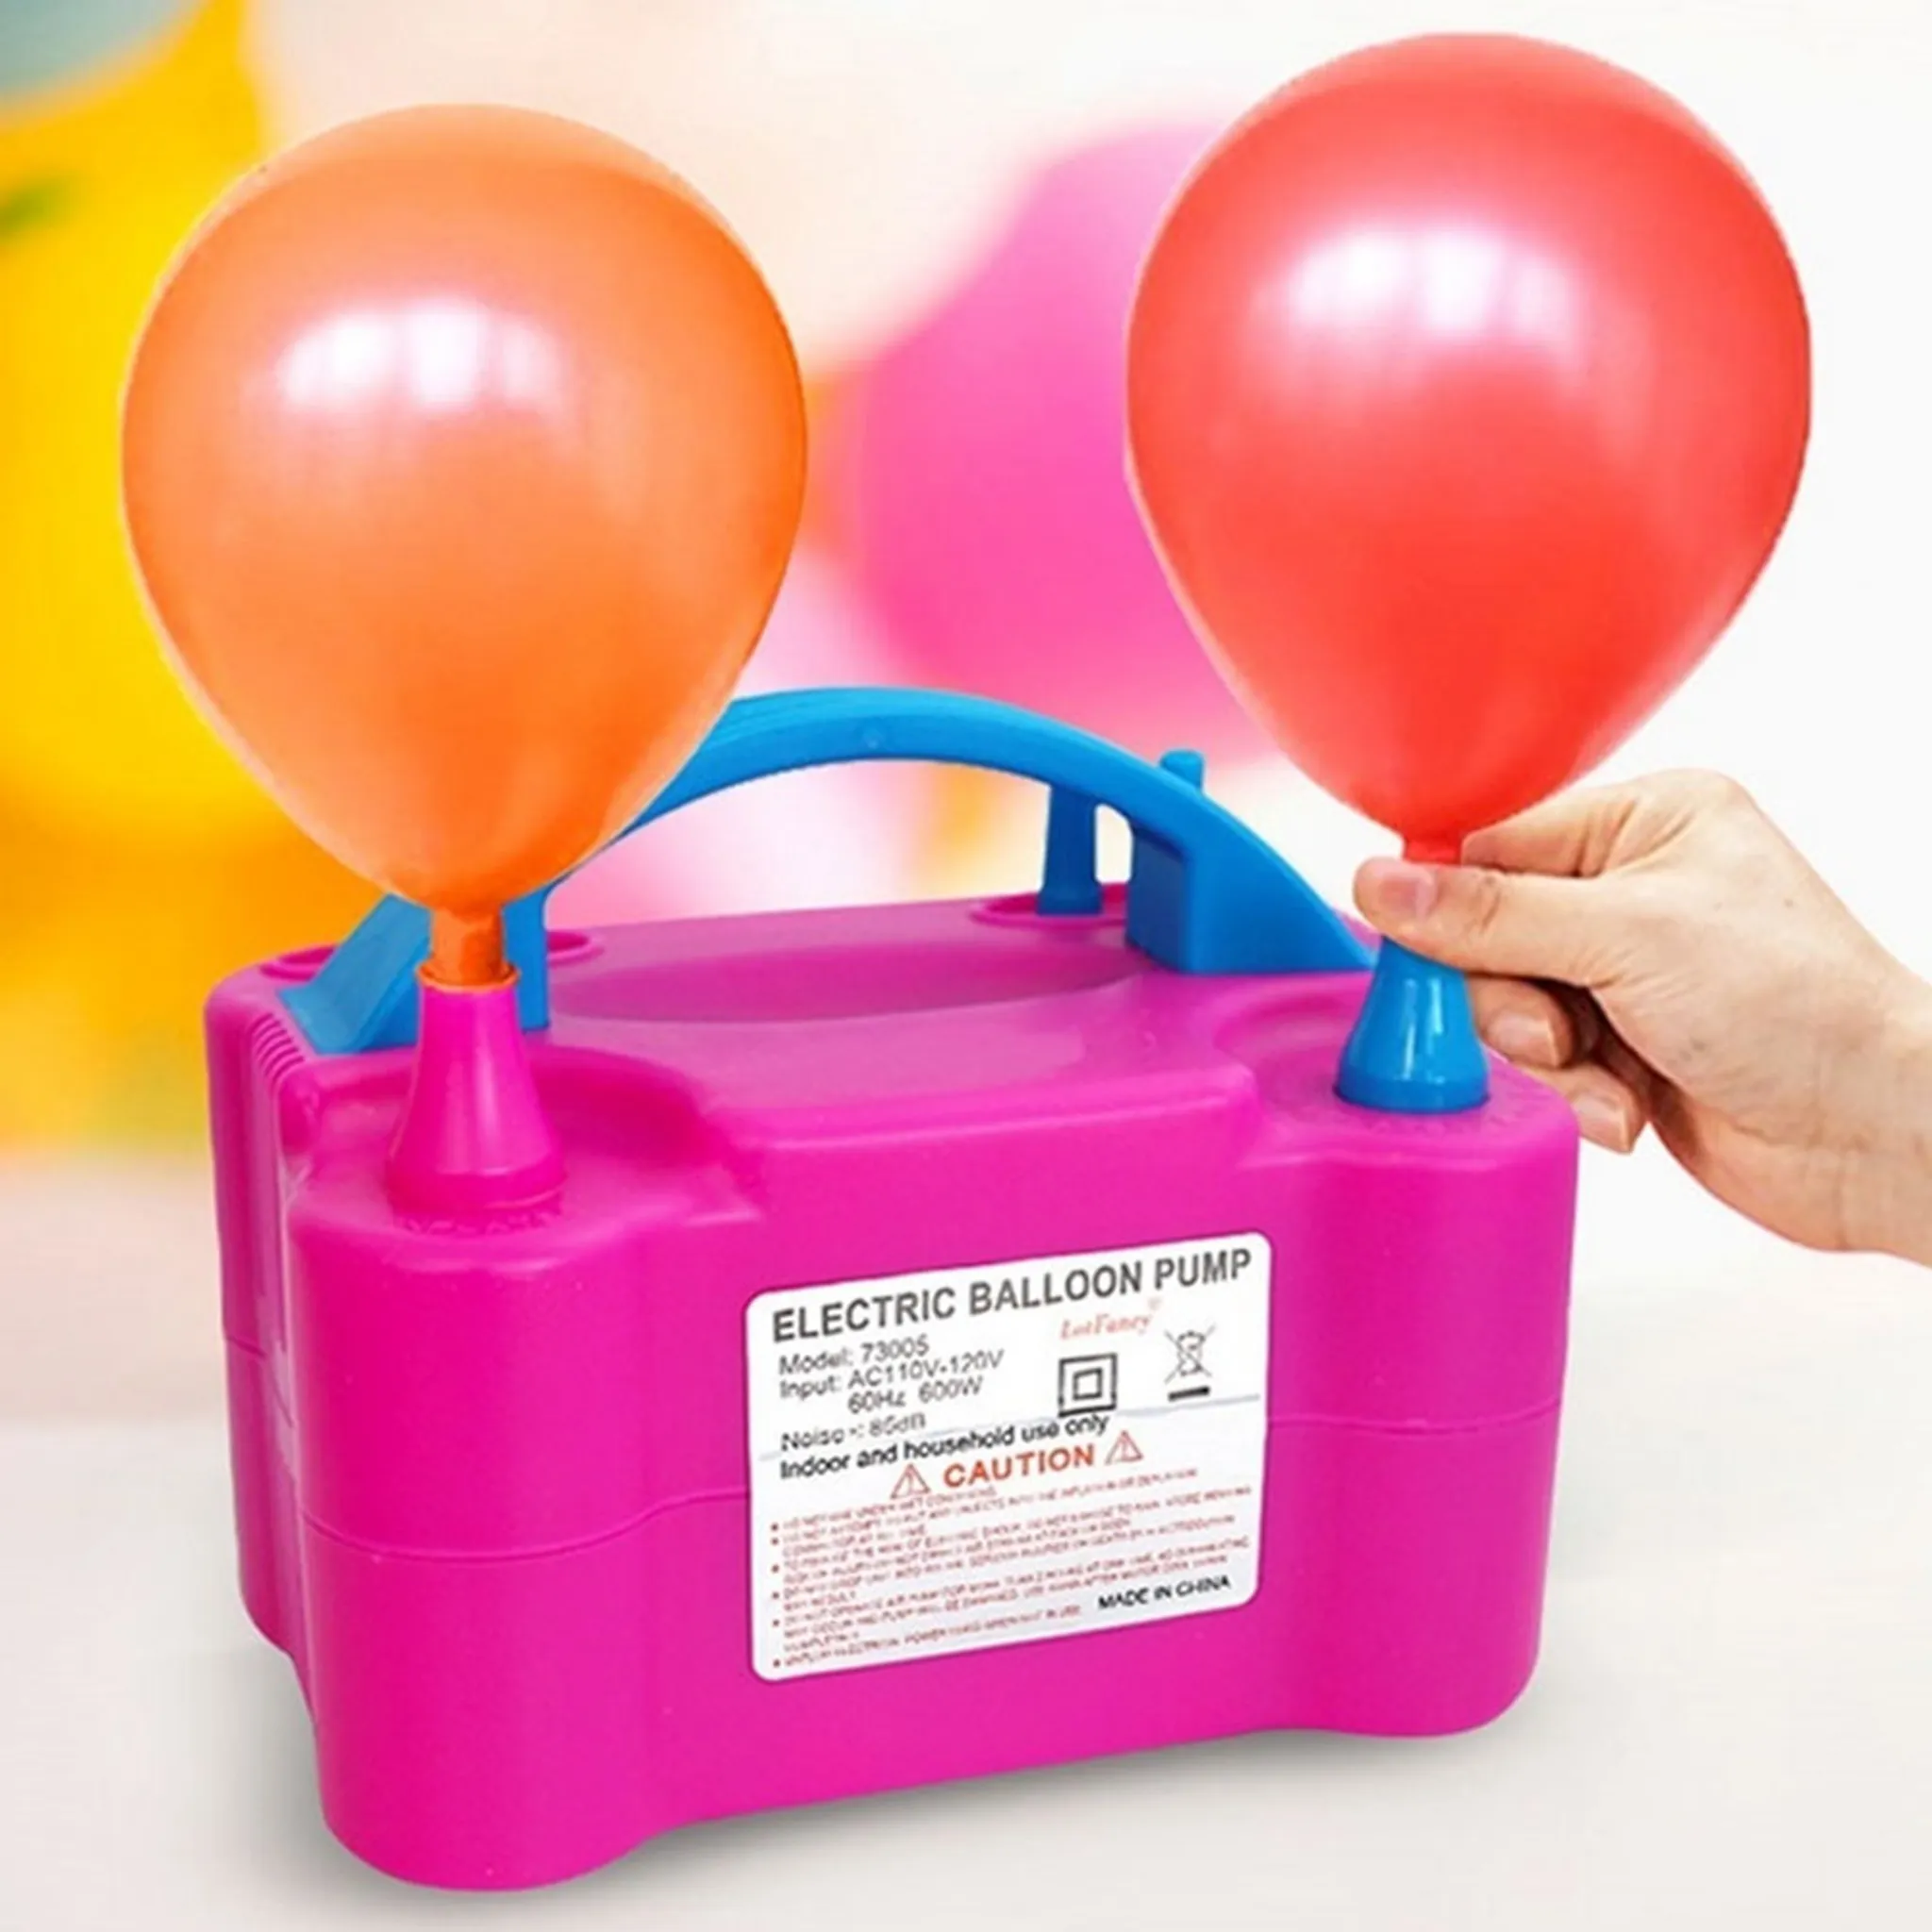 Ballon Luftpumpe Elektrisch - Kostenlose Rückgabe Innerhalb Von 90